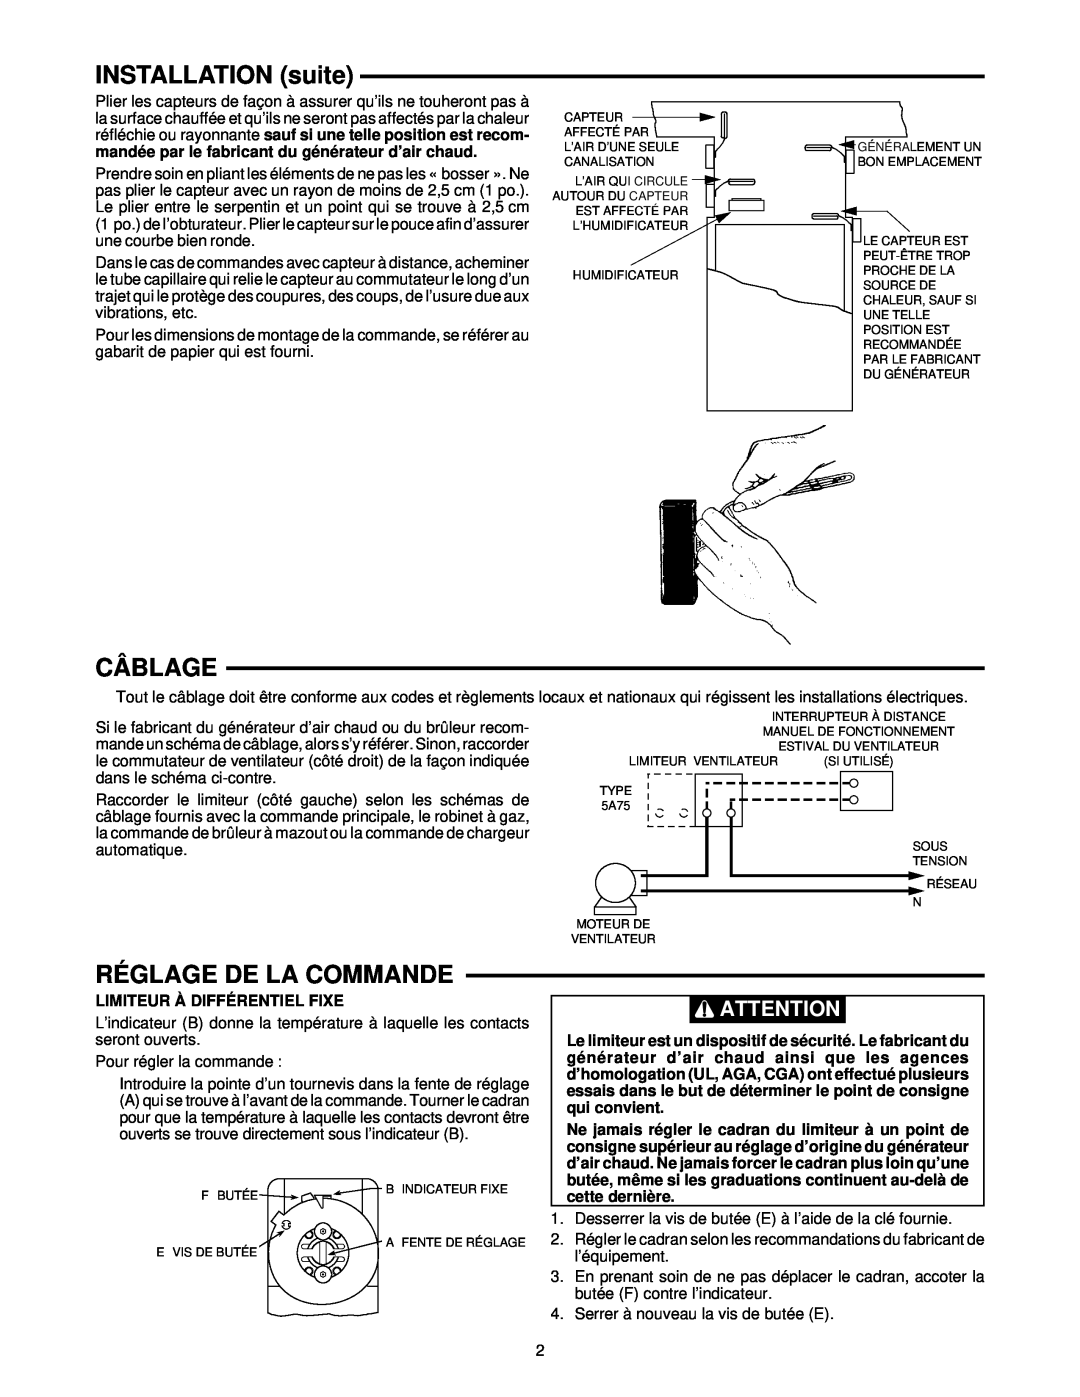 White Rodgers 5A75 installation instructions INSTALLATION suite, Câblage, Réglage De La Commande 